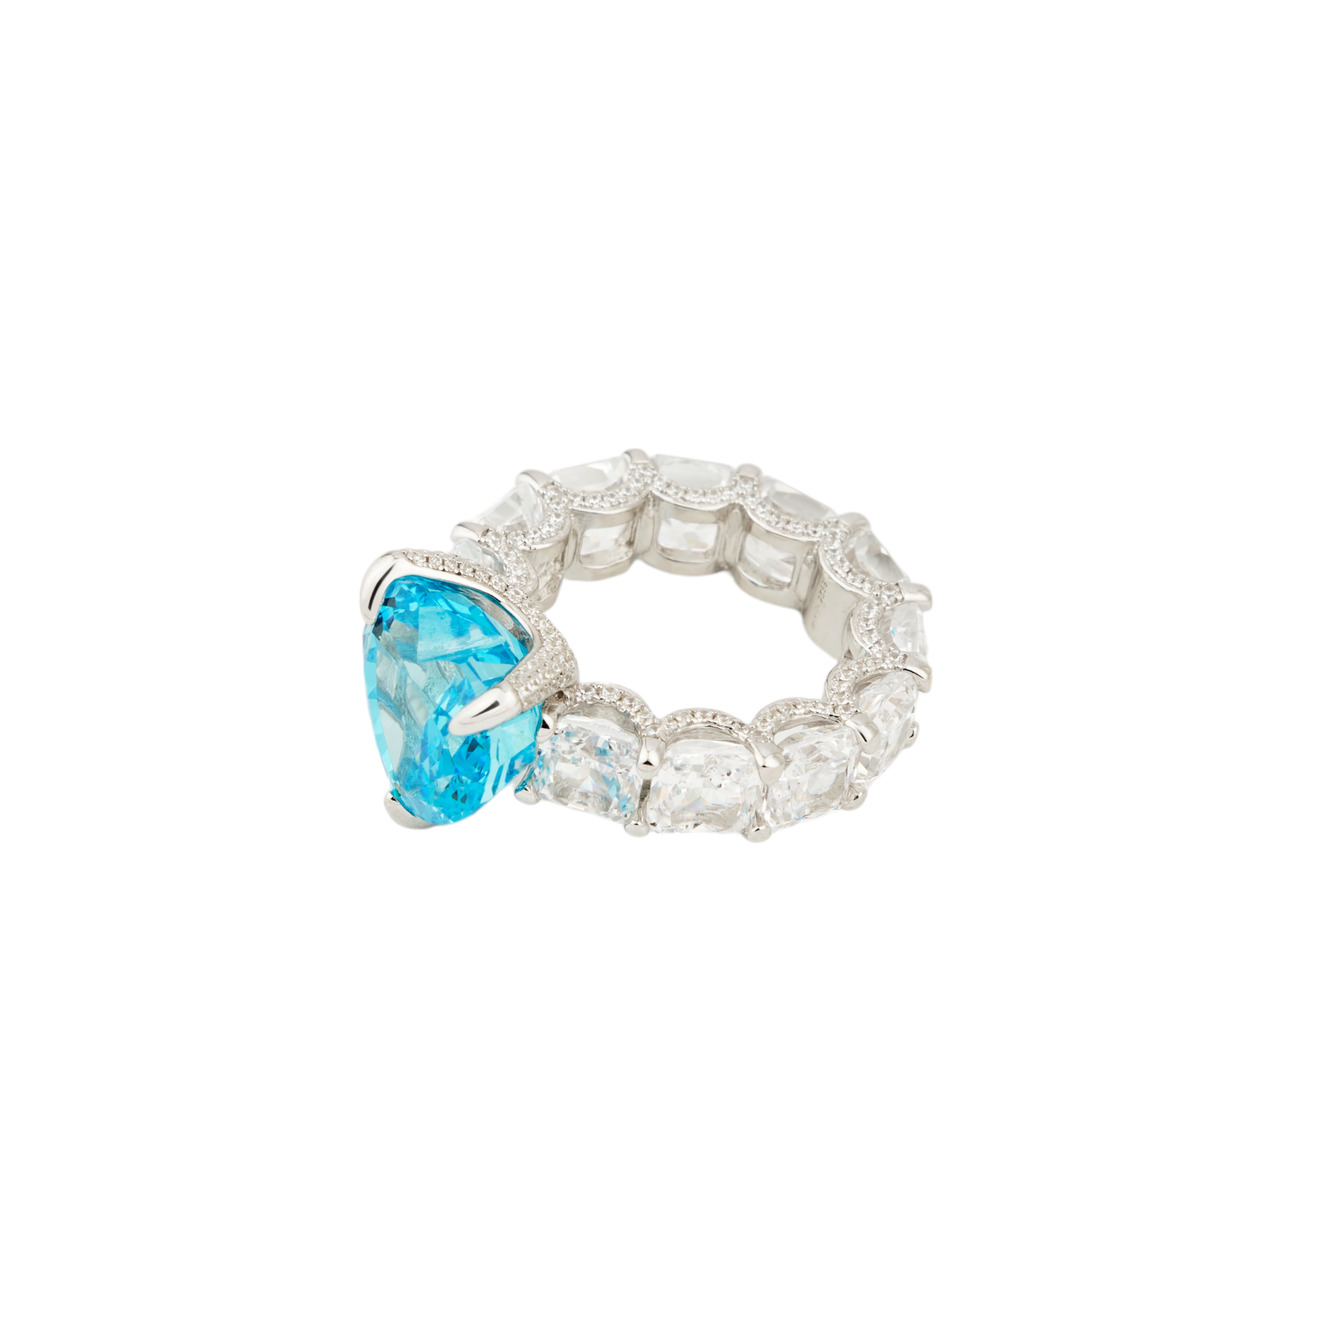 Holy Silver Кольцо из серебра с дорожкой из кристаллов и крупным голубым кристаллом сердце цена и фото